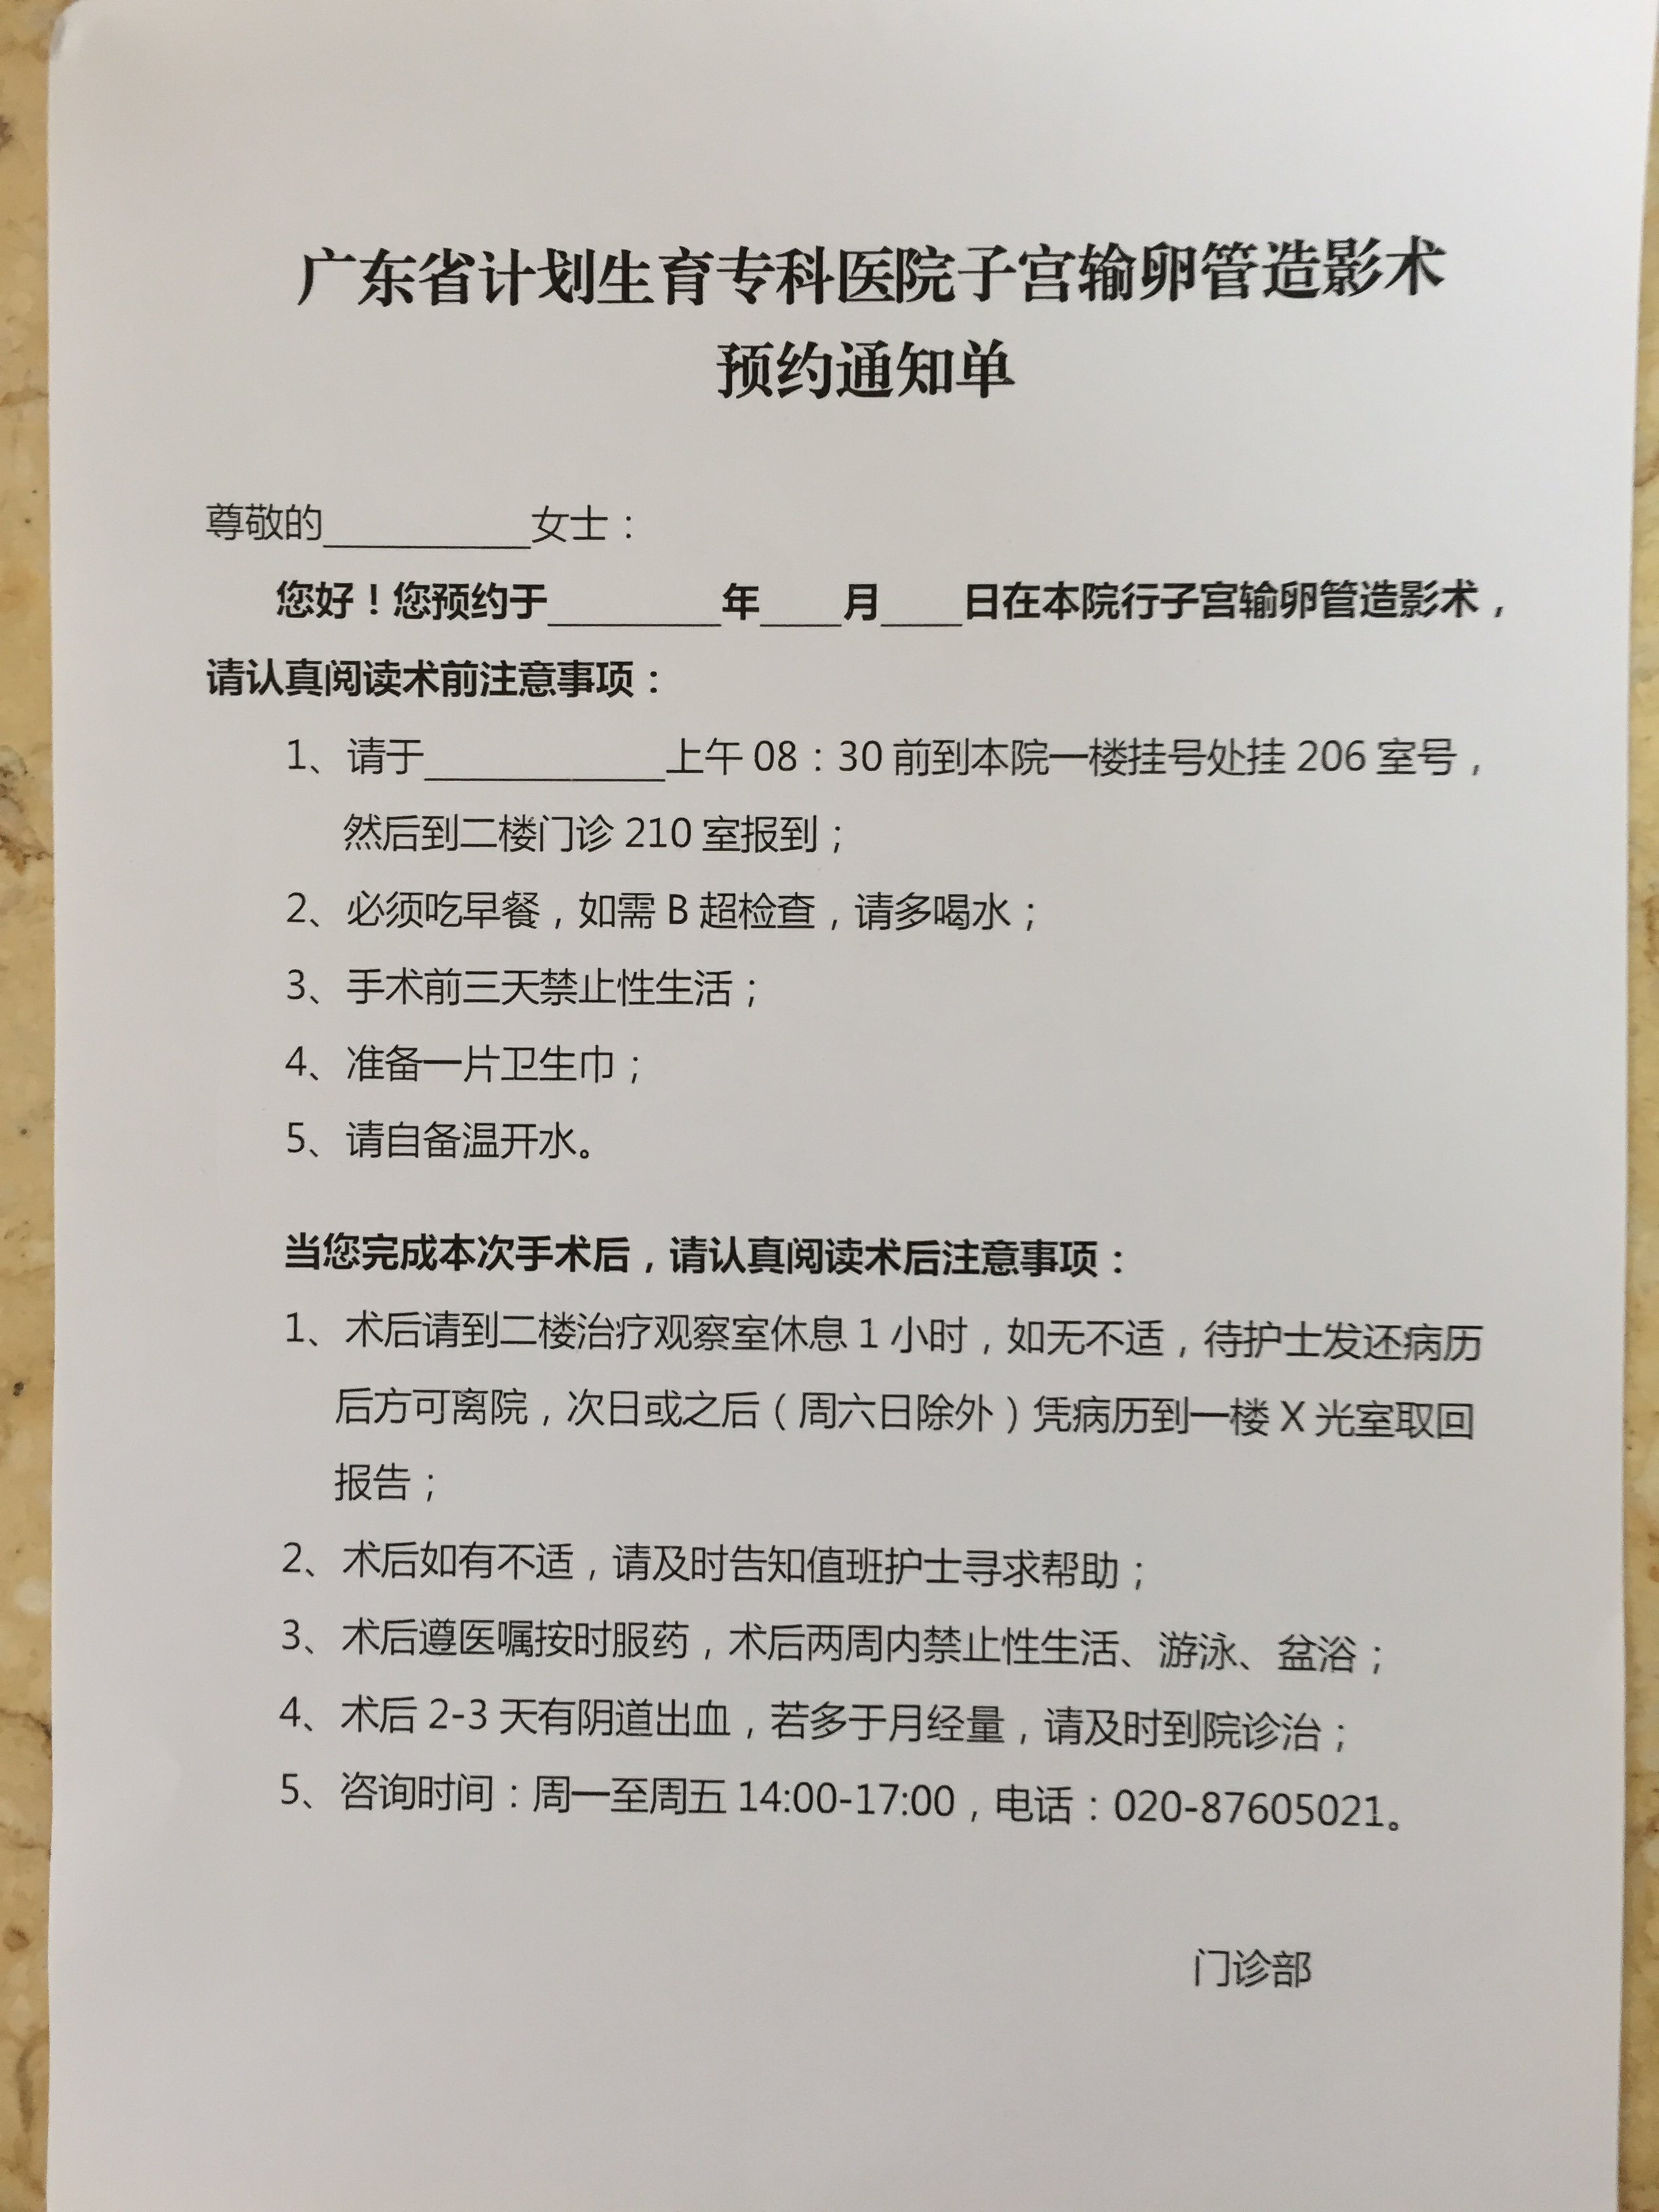 广东省计划生育专科医院子宫输卵管造影术预约通知单原创